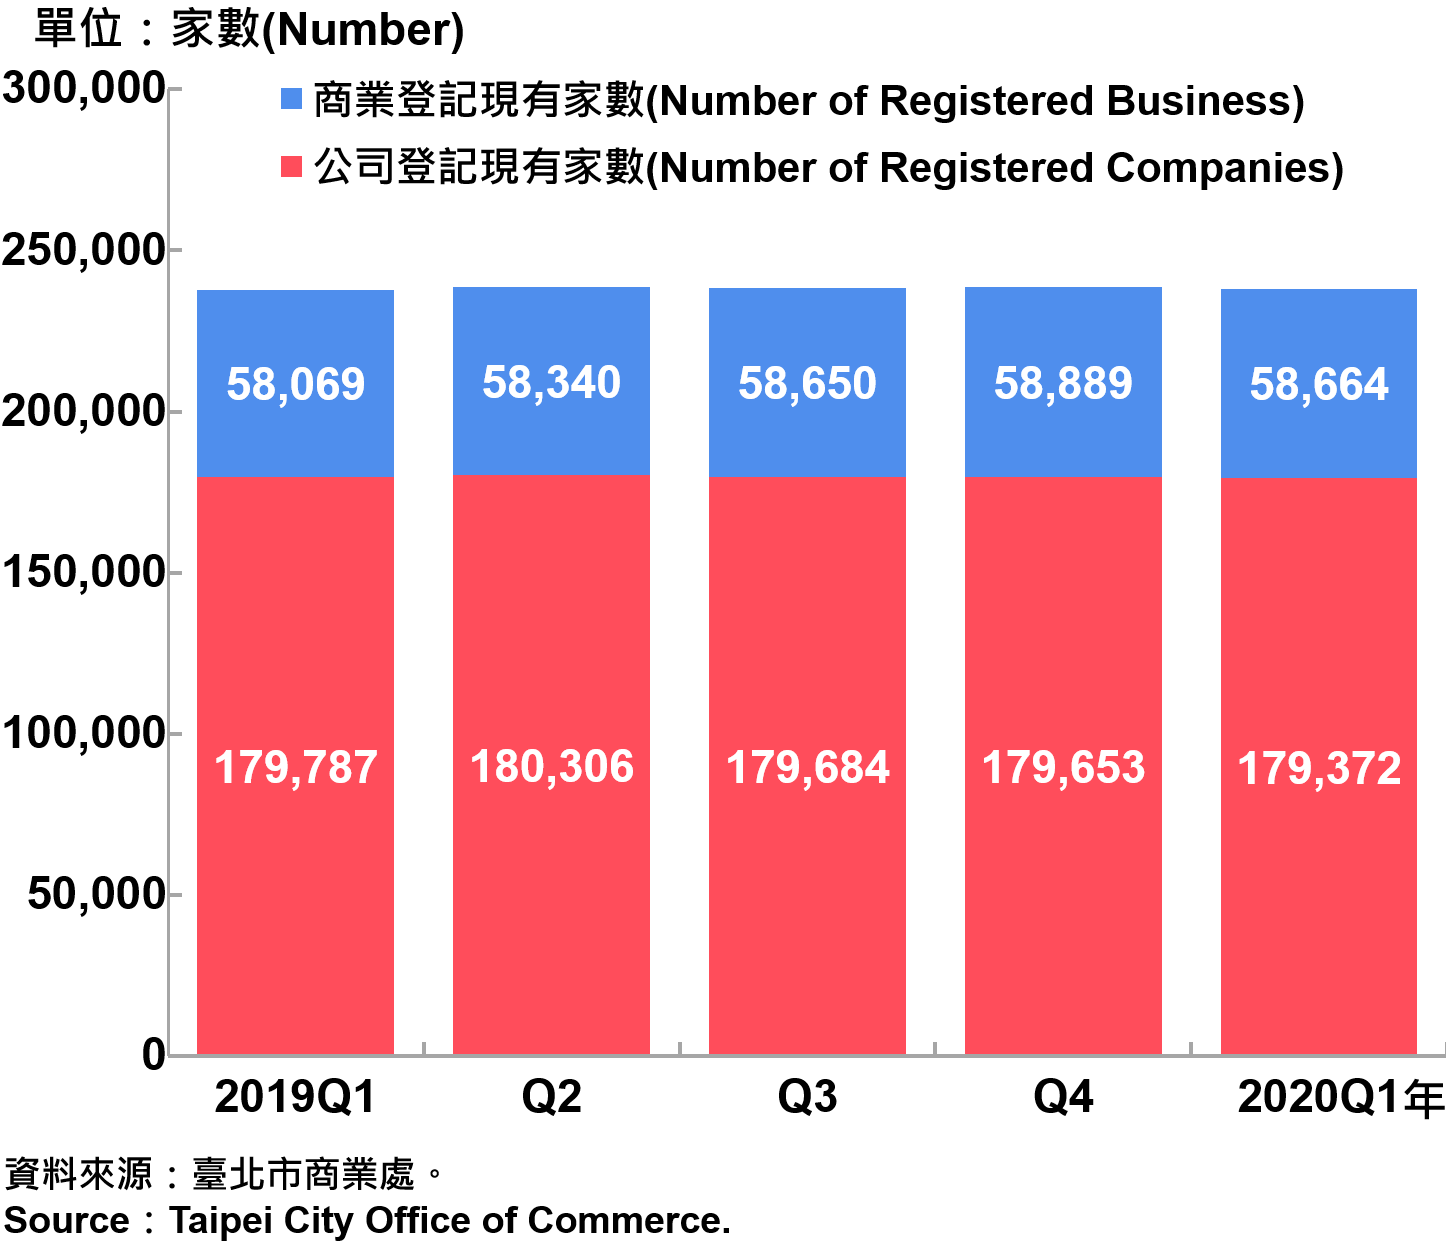 臺北市工商登記—2020Q1 Industry & Commerce Registration in Taipei—2020Q1